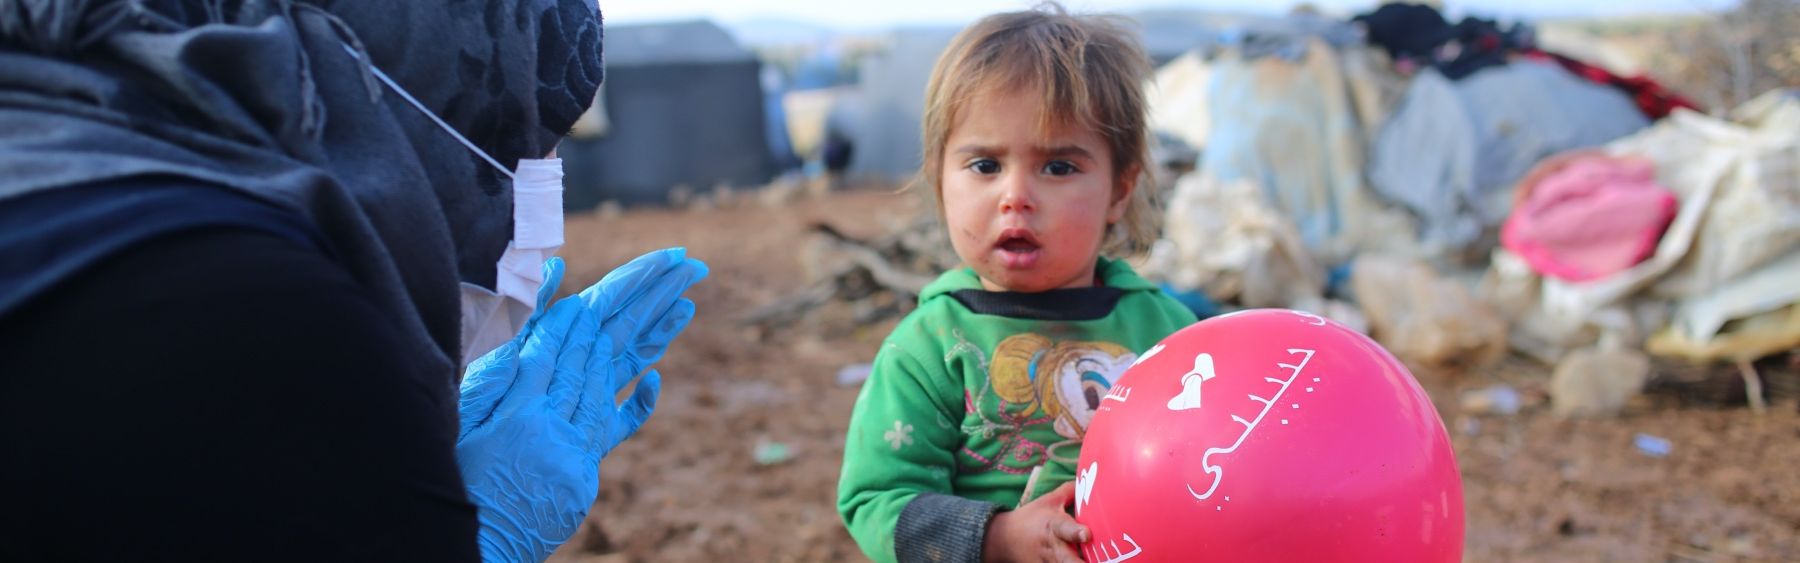 Kind mit einem Luftballon und eine Frau mit Kopftuch und Hygienehandschuhen in einem Flüchtlingscamp.